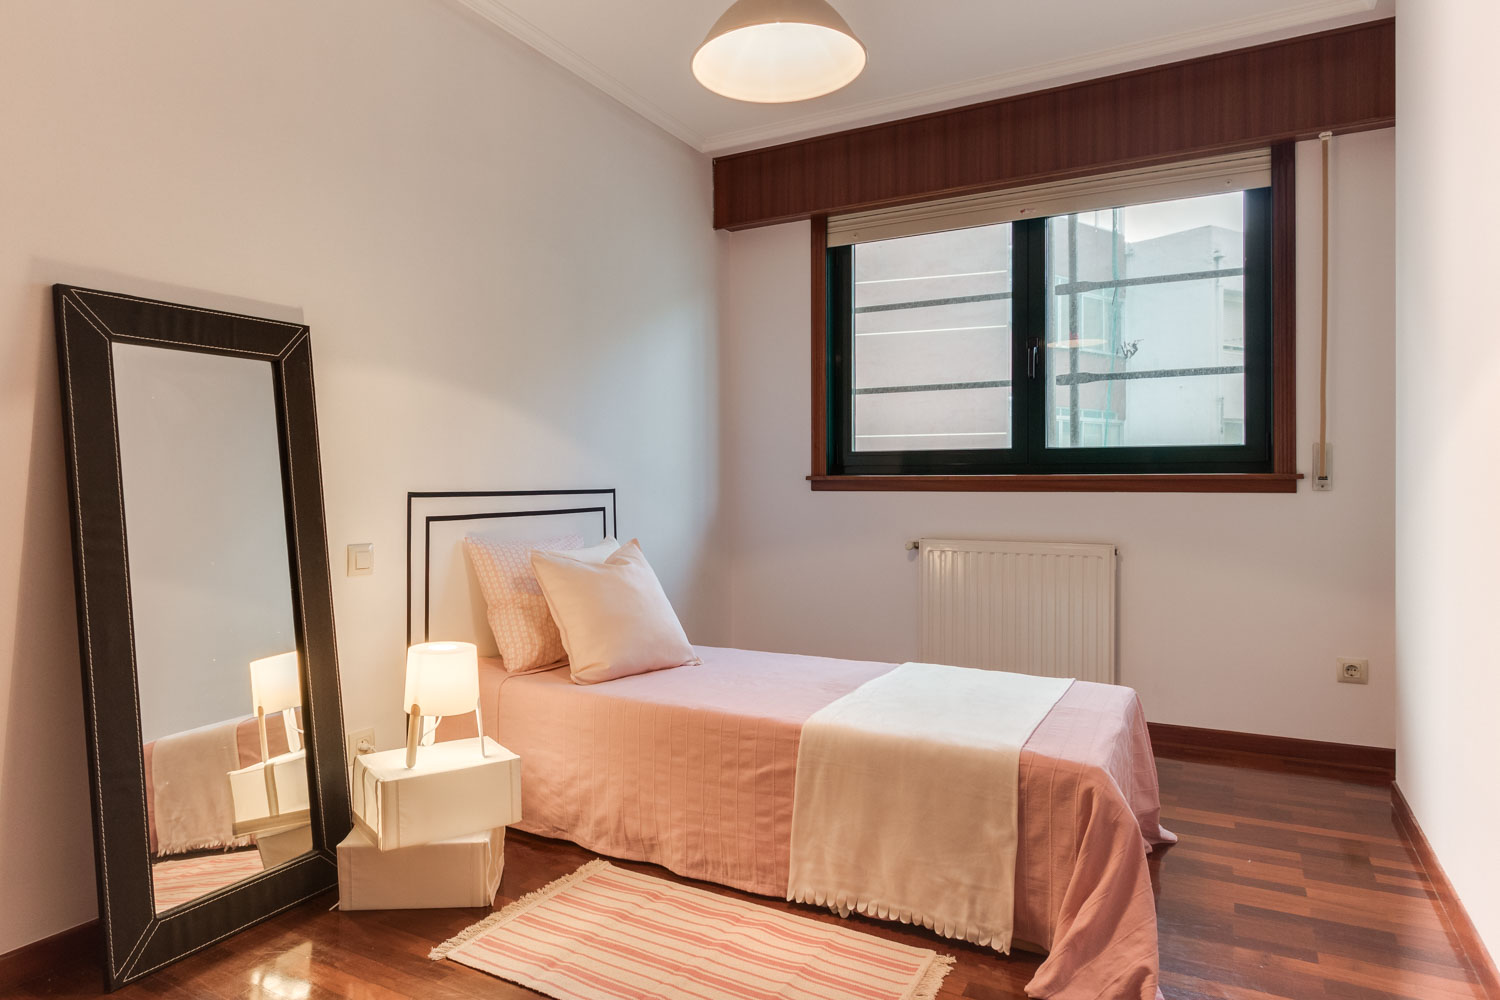 Dormitorio doble con cabecero de vinilo en pared y textiles blancos y rosa palo_ carpintería pvc verde